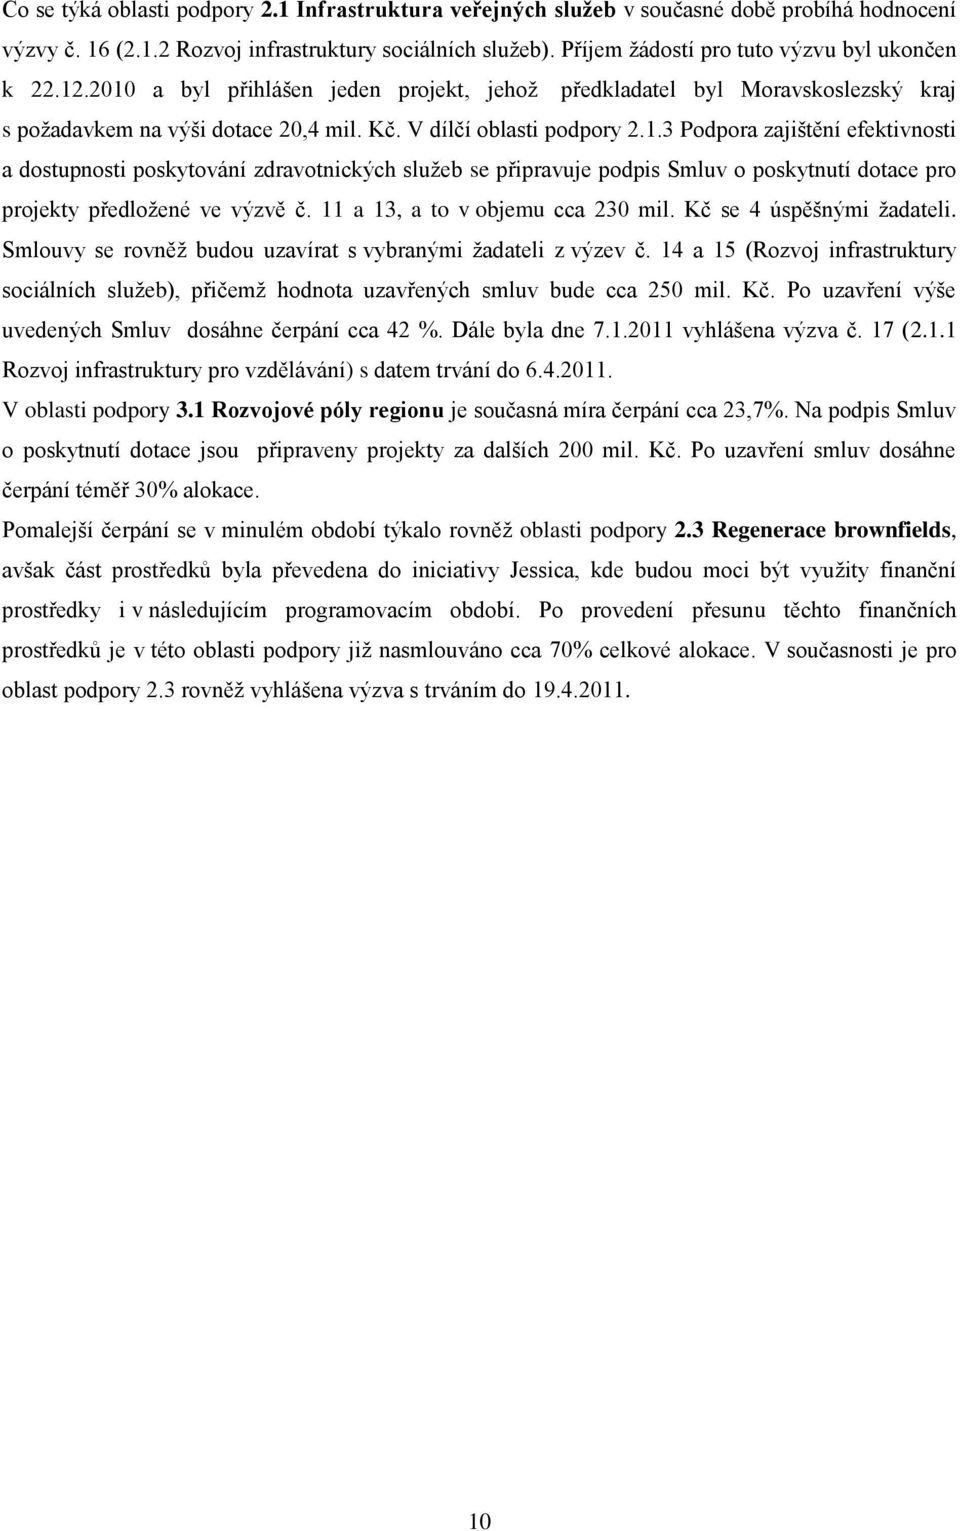 .2010 a byl přihlášen jeden projekt, jehoţ předkladatel byl Moravskoslezský kraj s poţadavkem na výši dotace 20,4 mil. Kč. V dílčí oblasti podpory 2.1.3 Podpora zajištění efektivnosti a dostupnosti poskytování zdravotnických sluţeb se připravuje podpis Smluv o poskytnutí dotace pro projekty předloţené ve výzvě č.